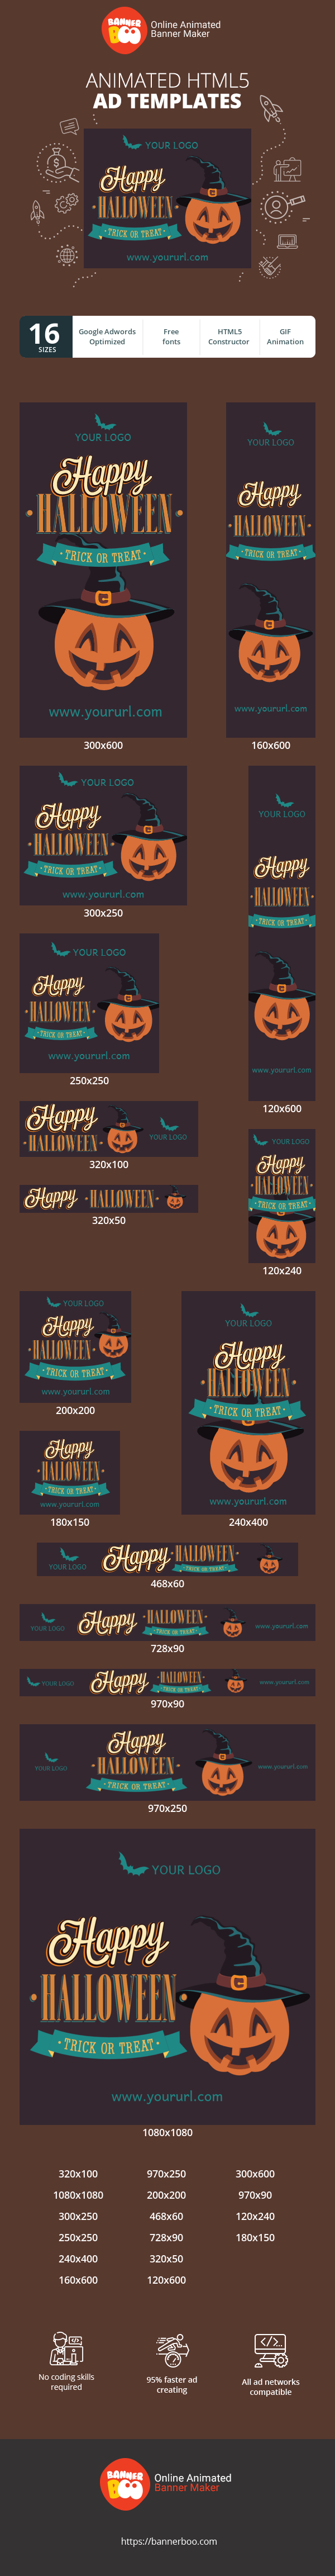 Szablon reklamy banerowej — Happy Halloween — Trick or Treat